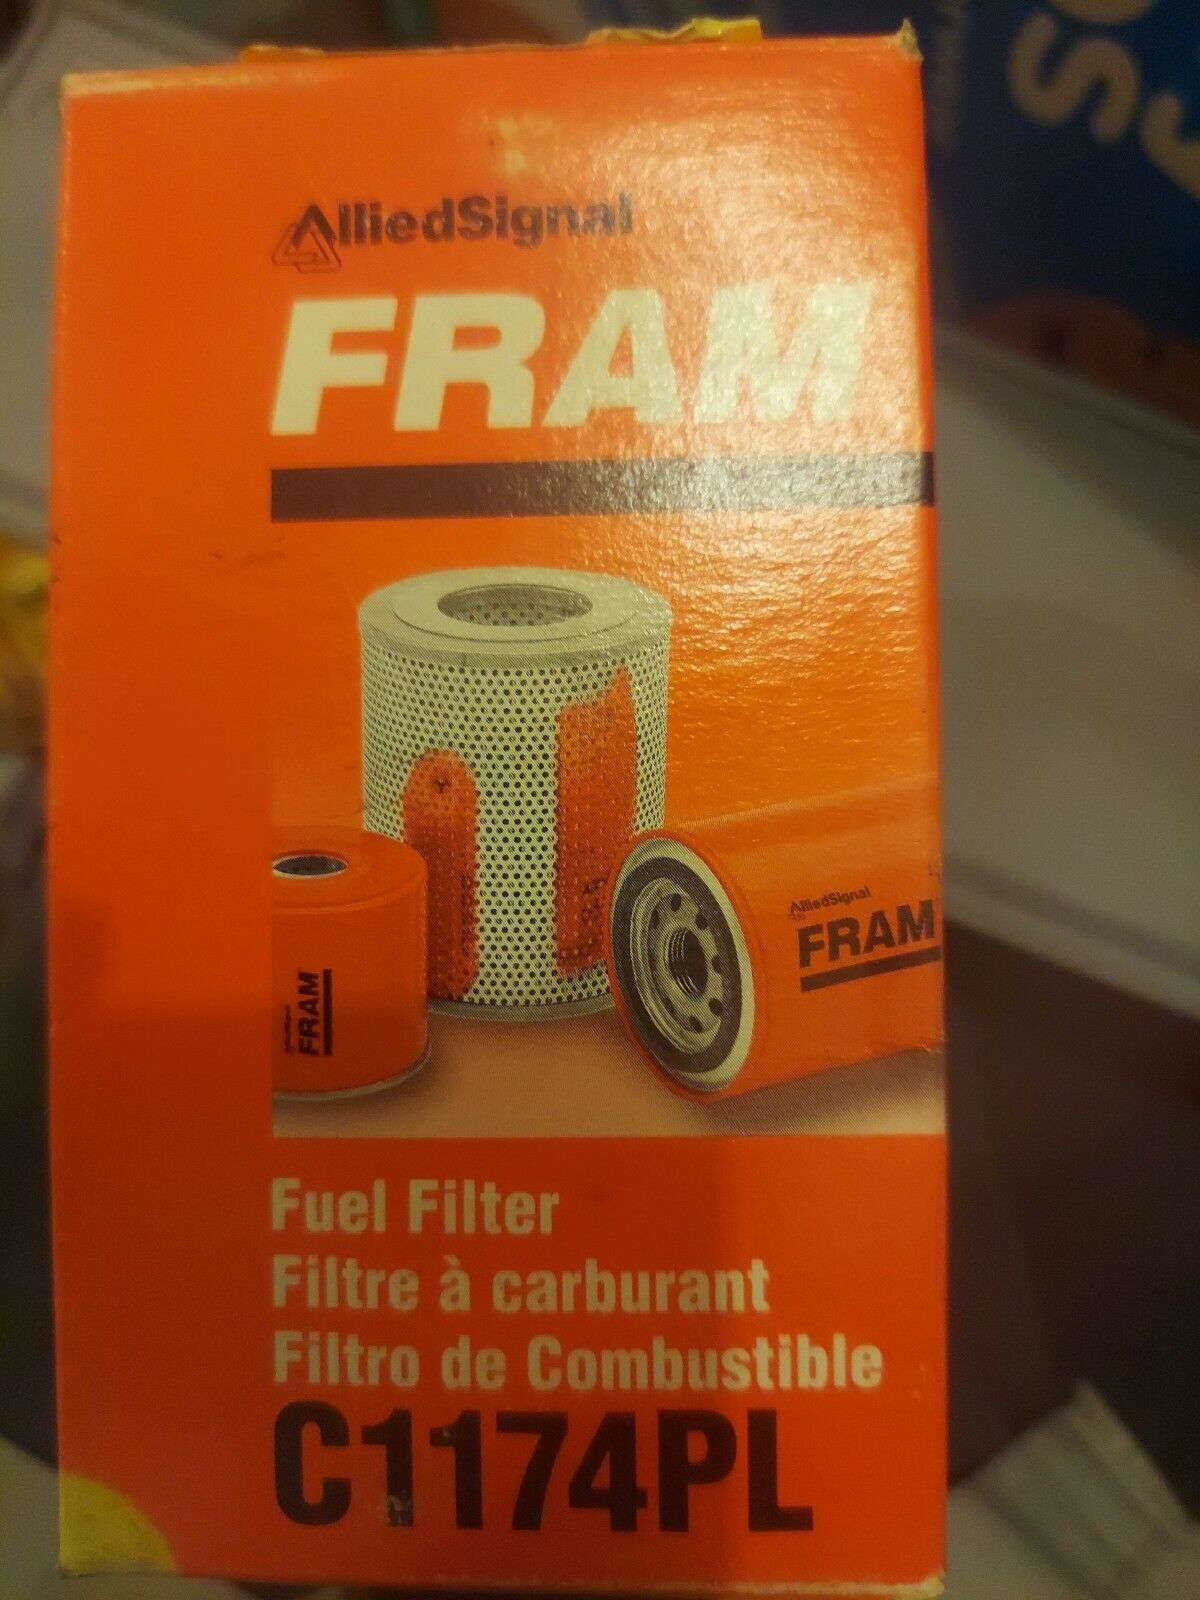 Fram Fuel Filter C1174PL